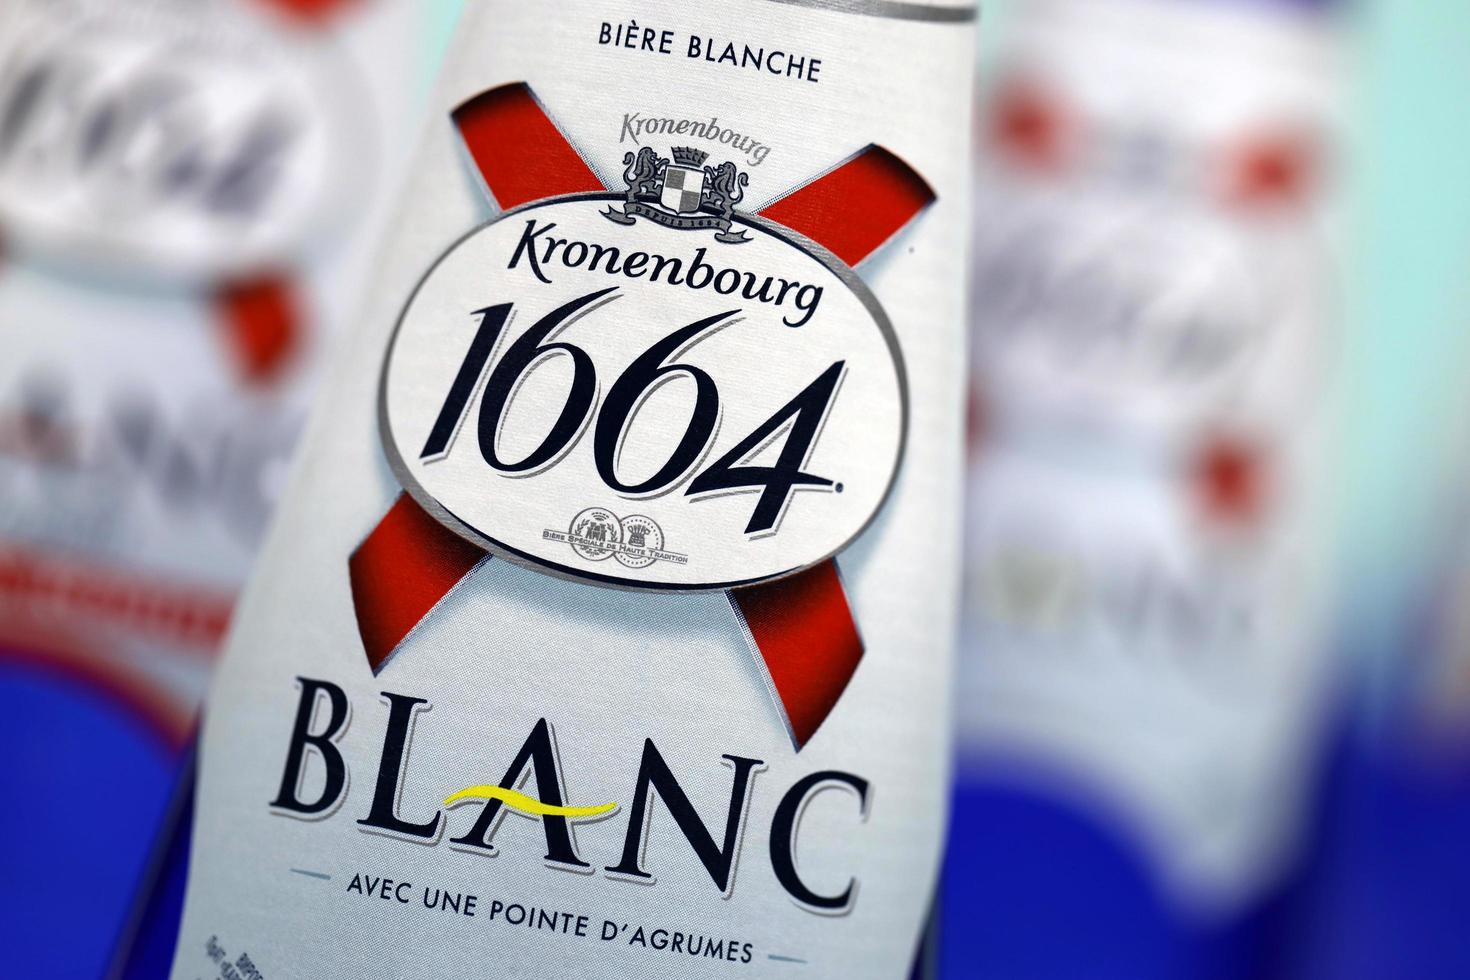 Kharkov. ukraine - 17 mai 2022 logo blanc sur les bouteilles de bière sur table blanche. 1664 blanc est la bière blanche de la brasserie française kronenbourg exportée dans le monde entier photo